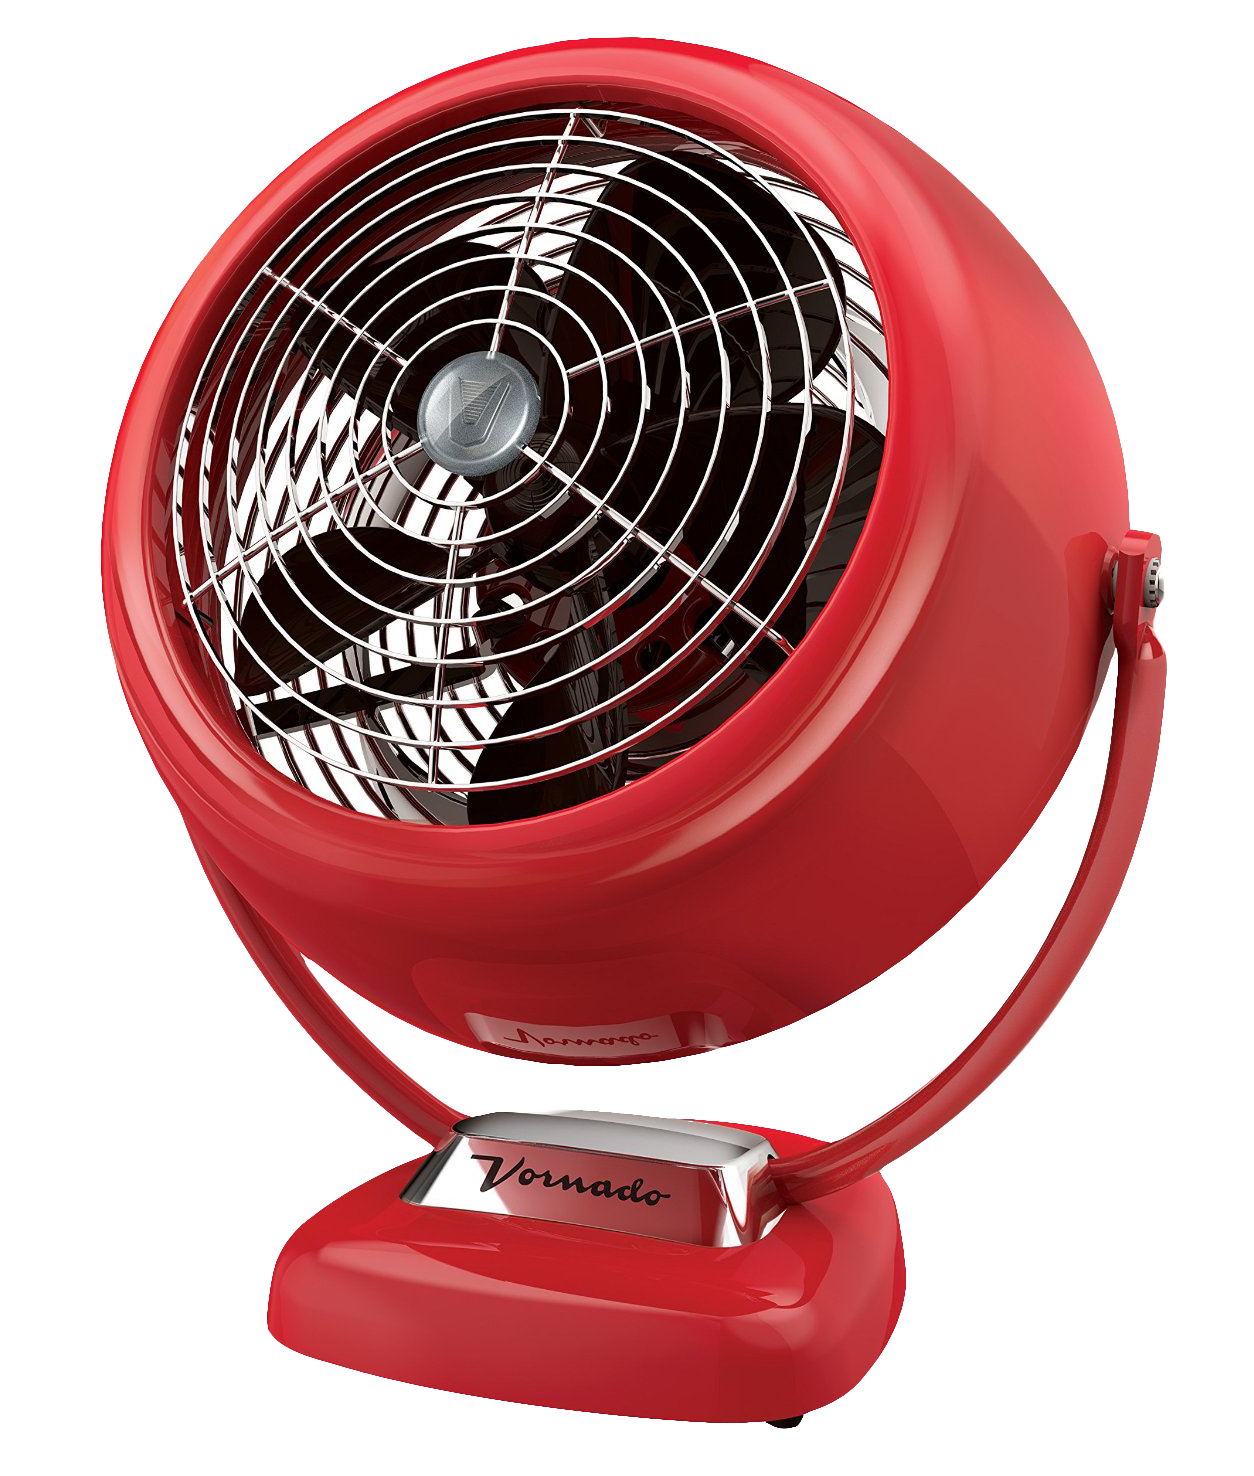 Red Vintage Style Vornado Fan PNG